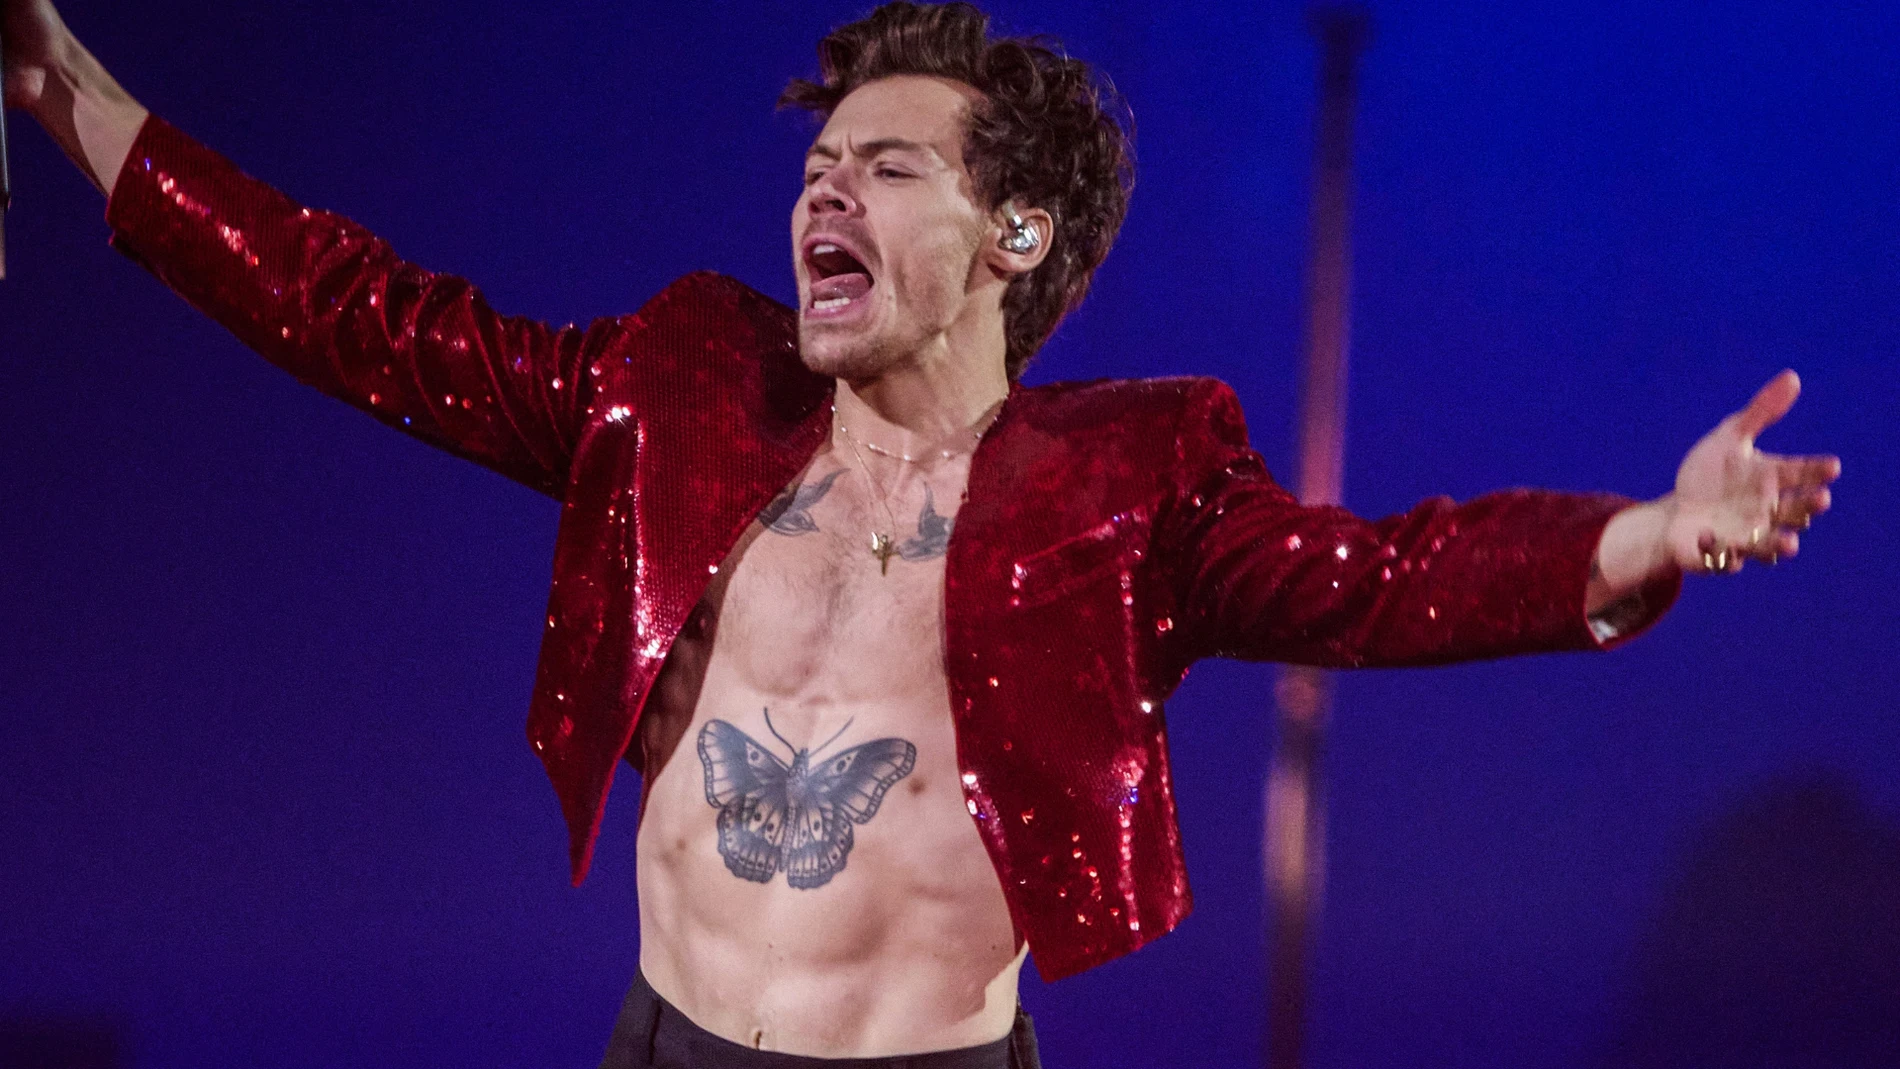 Los cuatro pezones de Harry Styles: las imágenes del cantante sin camiseta 